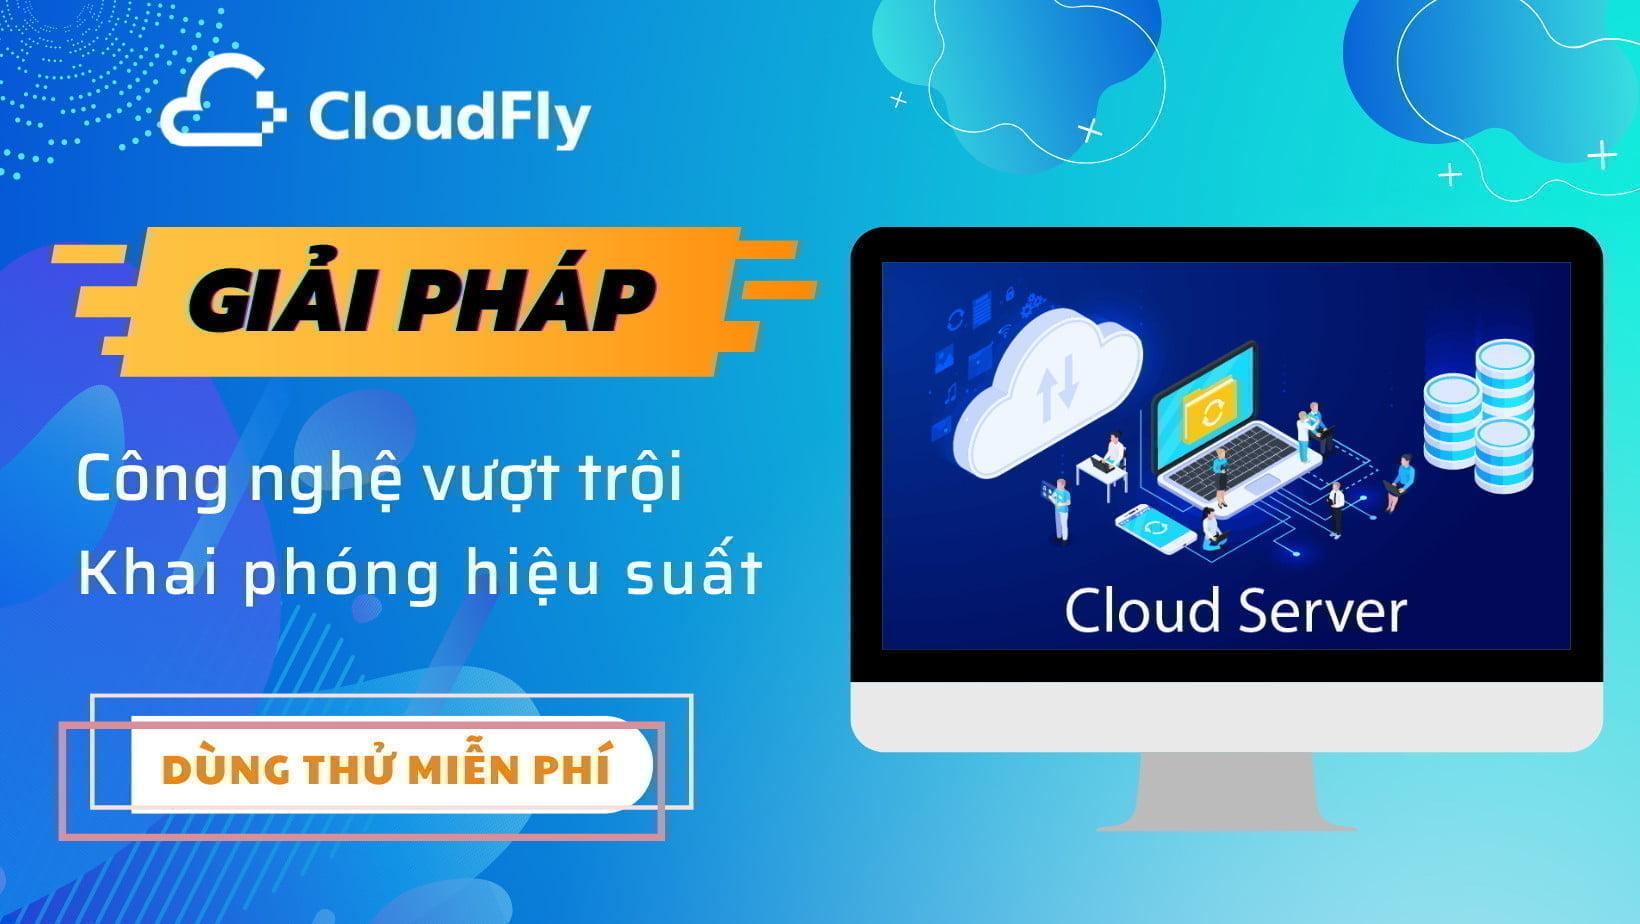 đăng ký tên miền .com và .net chất lượng giá rẻ tại cloudfly